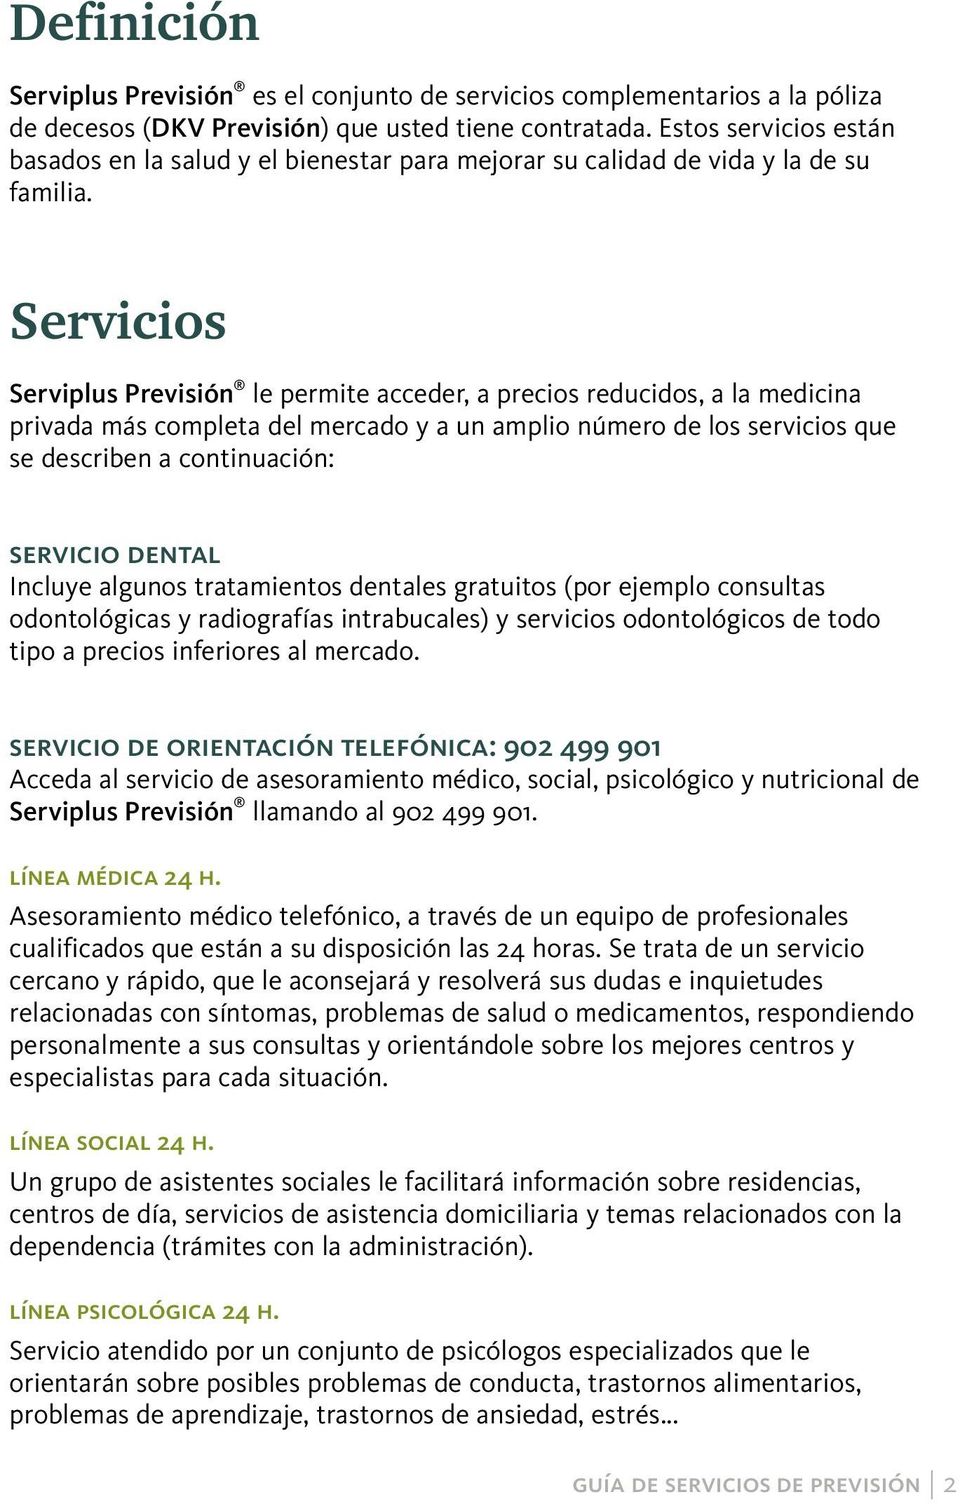 Servicios Serviplus Previsión le permite acceder, a precios reducidos, a la medicina privada más completa del mercado y a un amplio número de los servicios que se describen a continuación: servicio